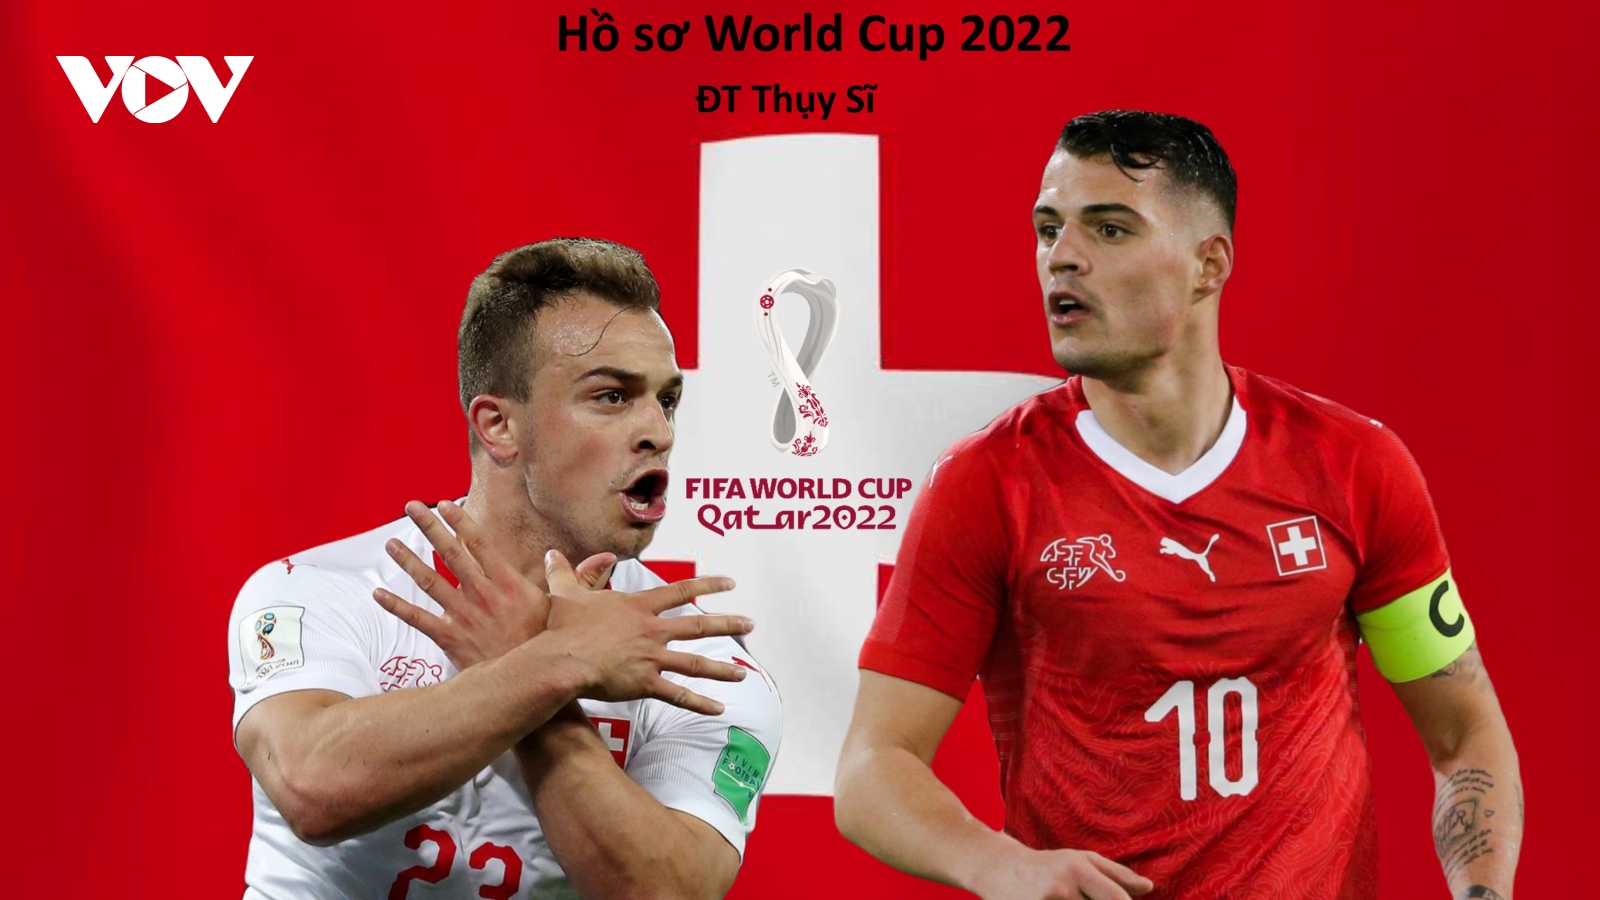 Hồ sơ các ĐT dự VCK World Cup 2022: Đội tuyển Thụy Sĩ